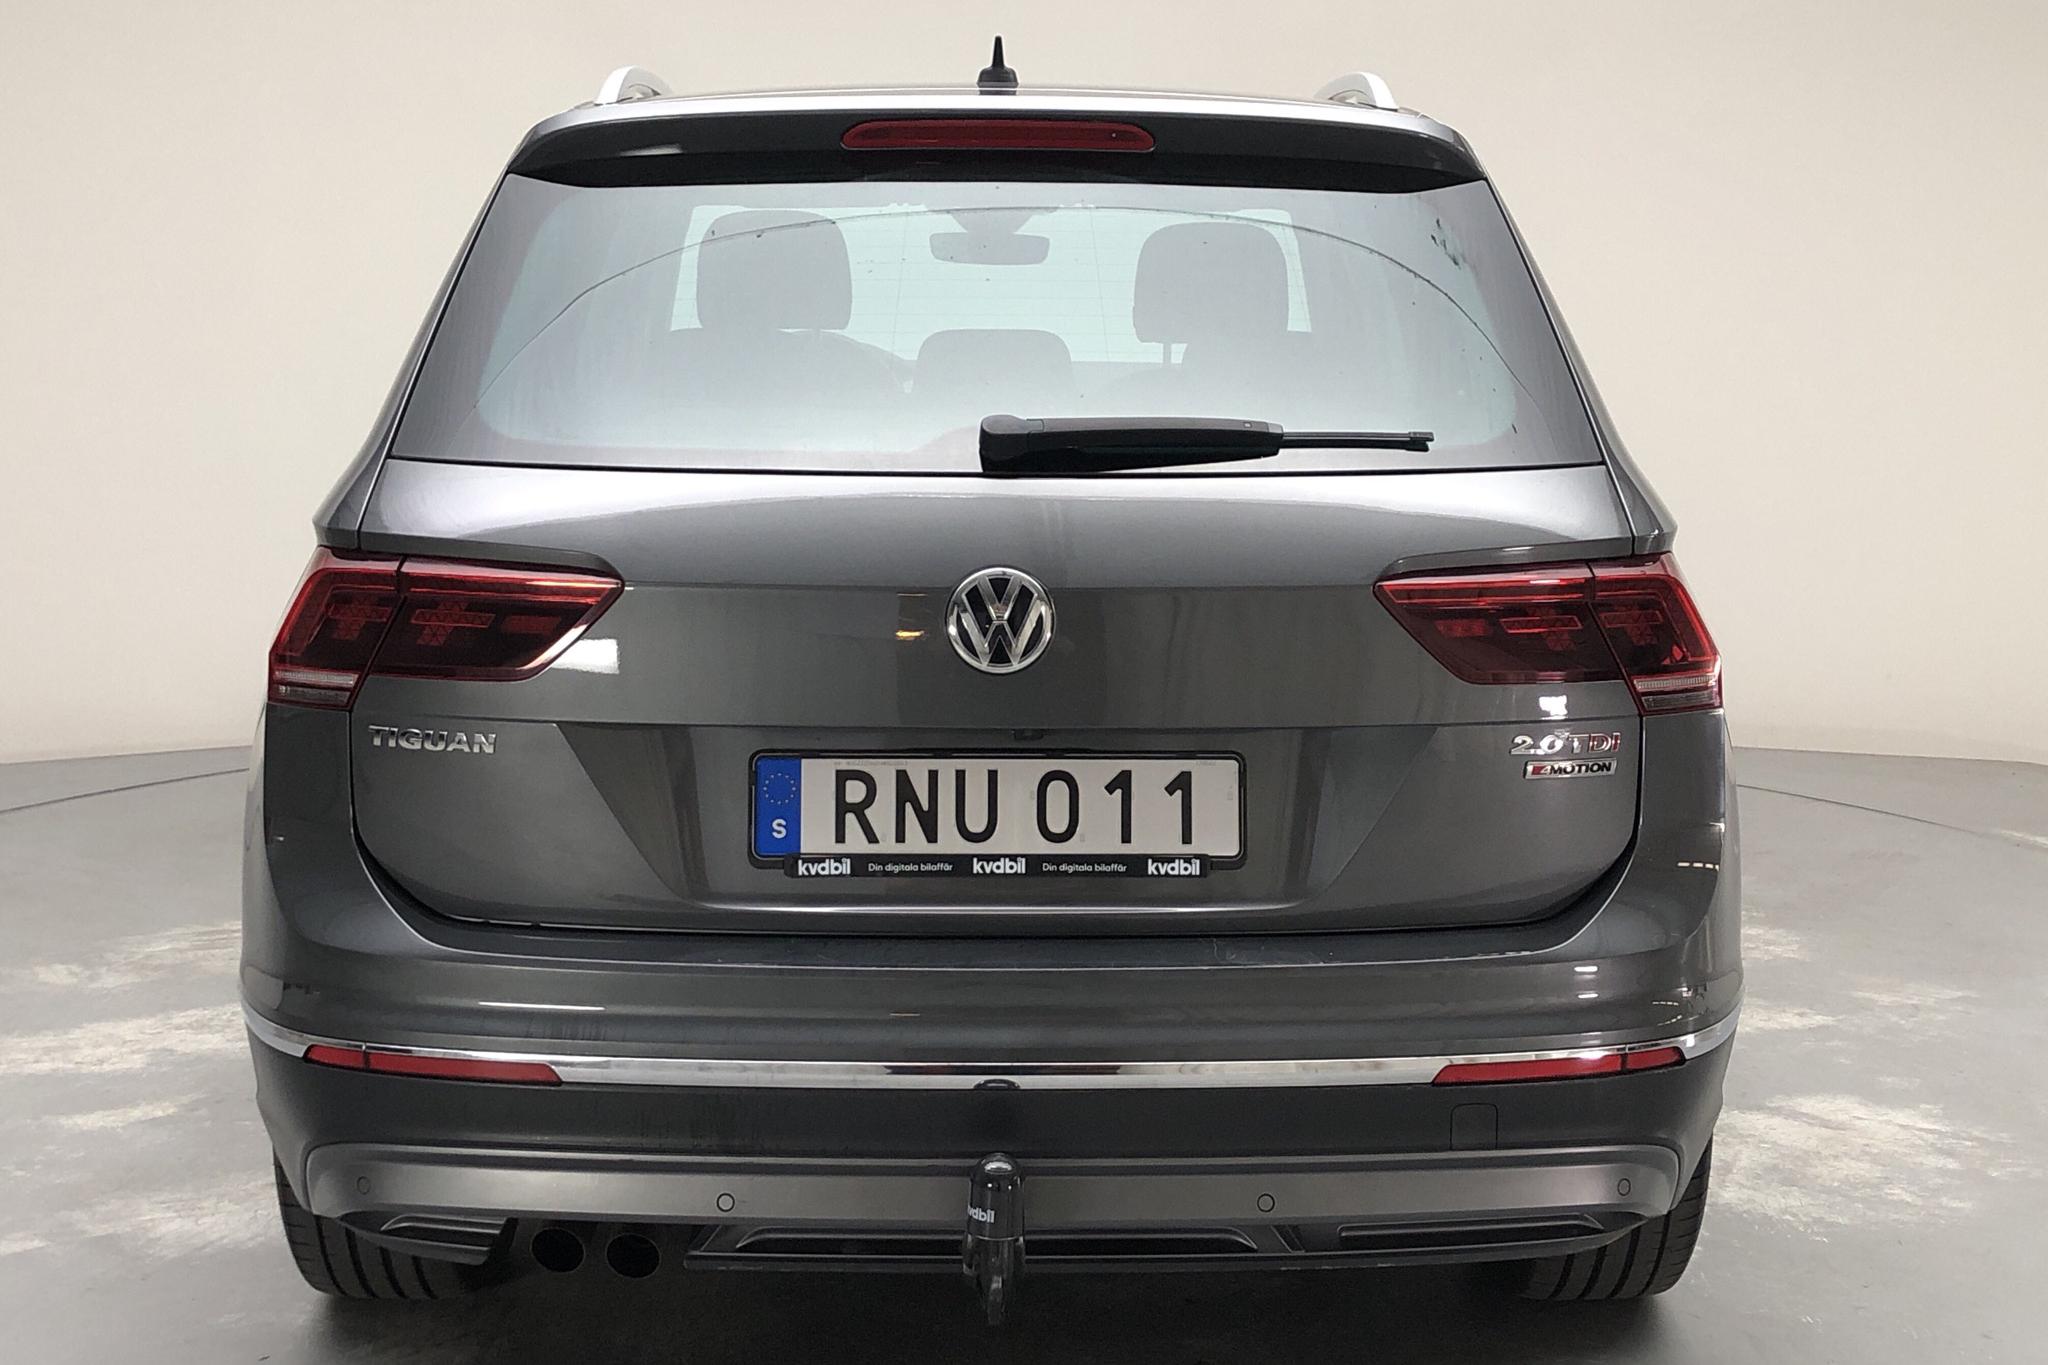 VW Tiguan 2.0 TDI 4MOTION (190hk) - 108 730 km - Automatic - silver - 2017